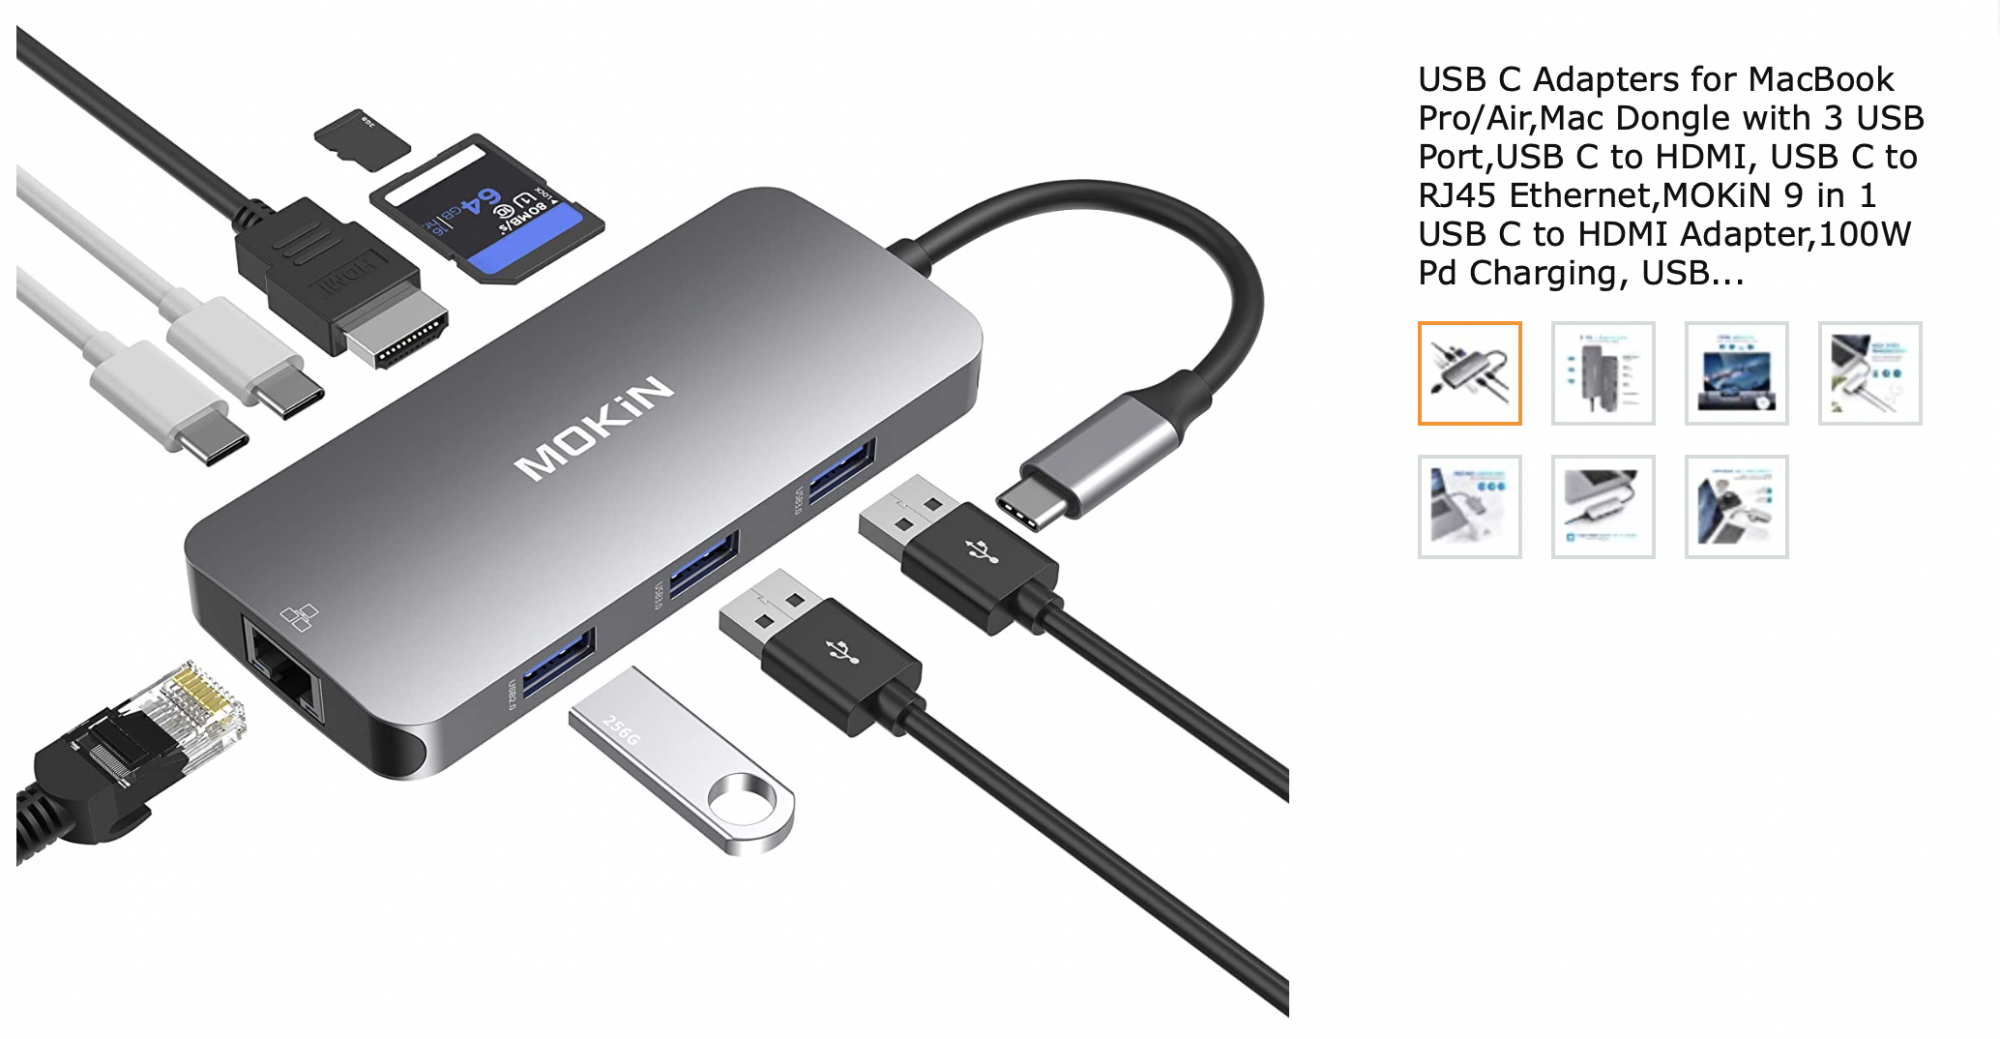 MOKIN 8 IN 1 MacBook Pro Adapter USB C Hub – Mokin